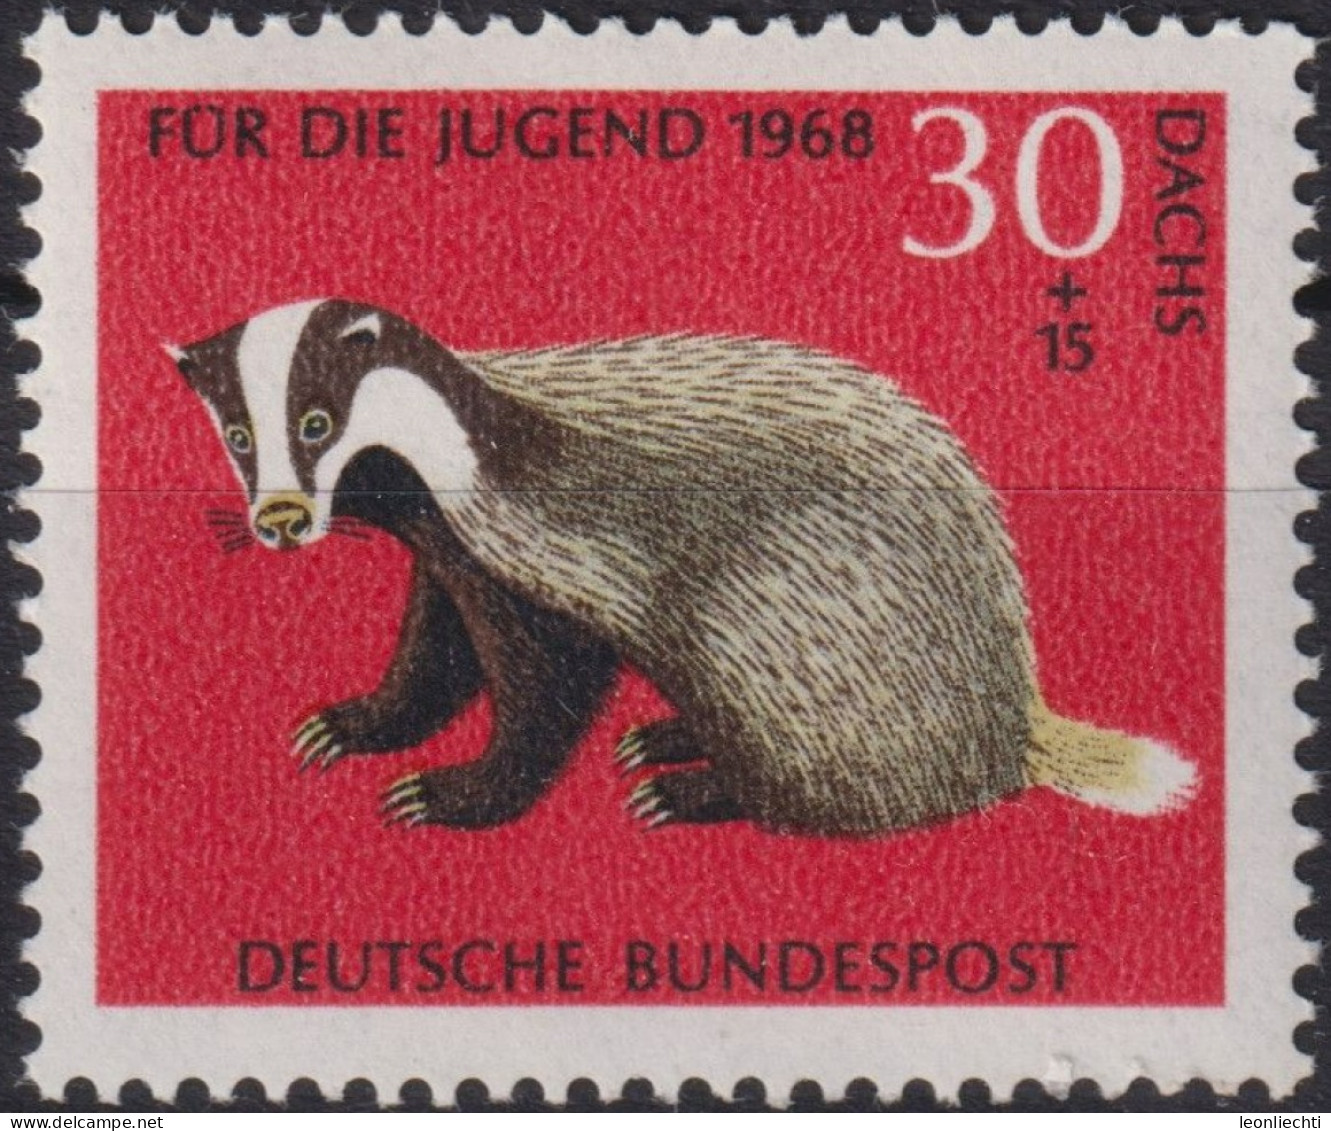 1968 Deutschland > BRD, ** Mi:DE 551, Sn:DE B432, Yt:DE 416, Europäischer Dachs, Wildtiere - Wild